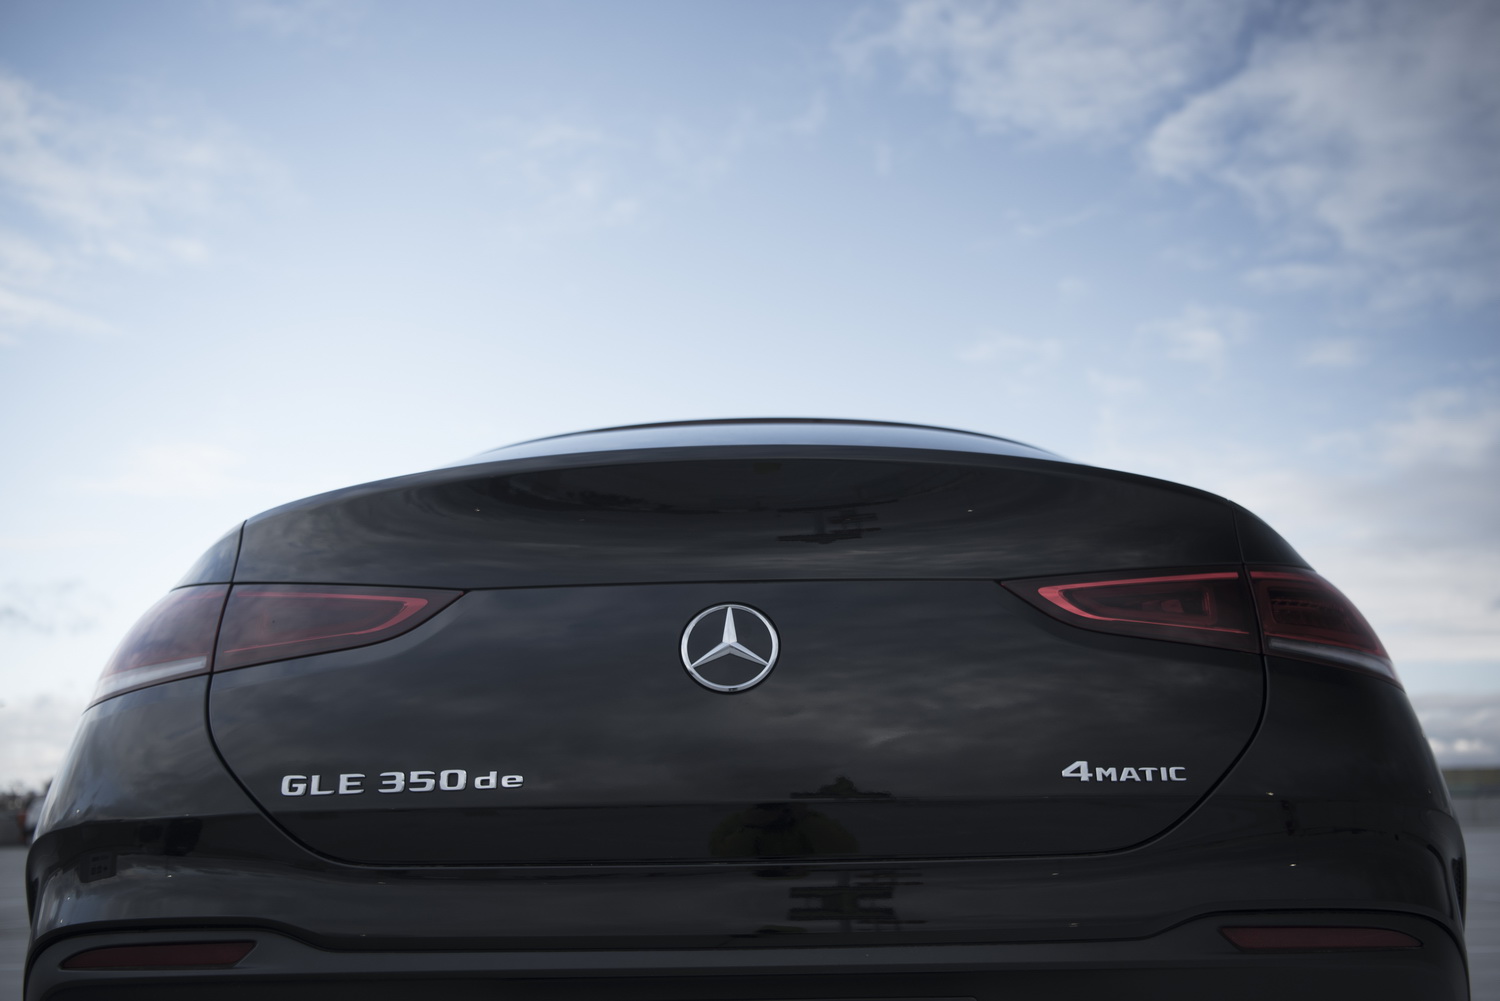 Silberne Schriftzüge und das Markenlogo am Heck des schwarzen Mercedes GLE 350 de, der auf einem Parkdeck unter blauem Himmel steht.